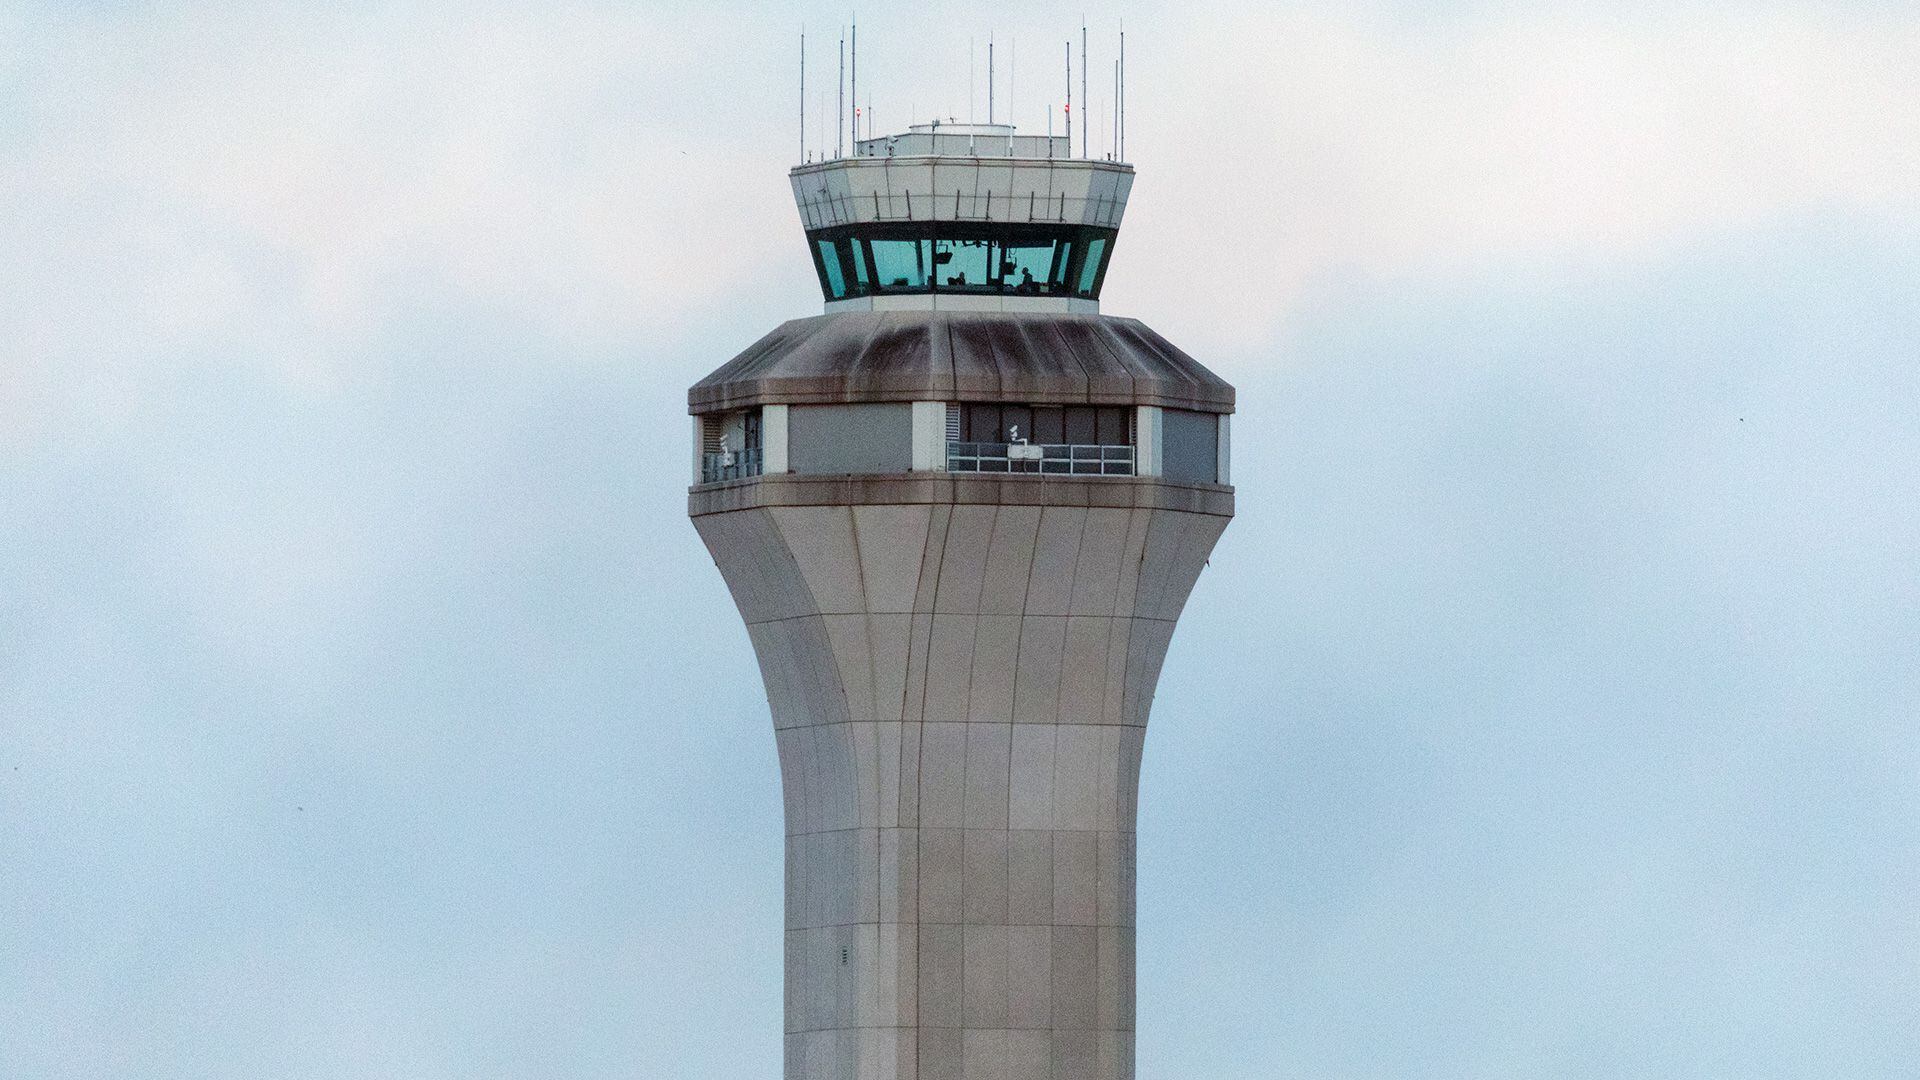 La torre de control de tráfico aéreo en el Aeropuerto Internacional Austin-Bergstrom, en Austin, Texas, donde se autorizó el aterrizaje de un avión en la misma pista en que salía otro vuelo (Ilana Panich-Linsman/The New York Times)